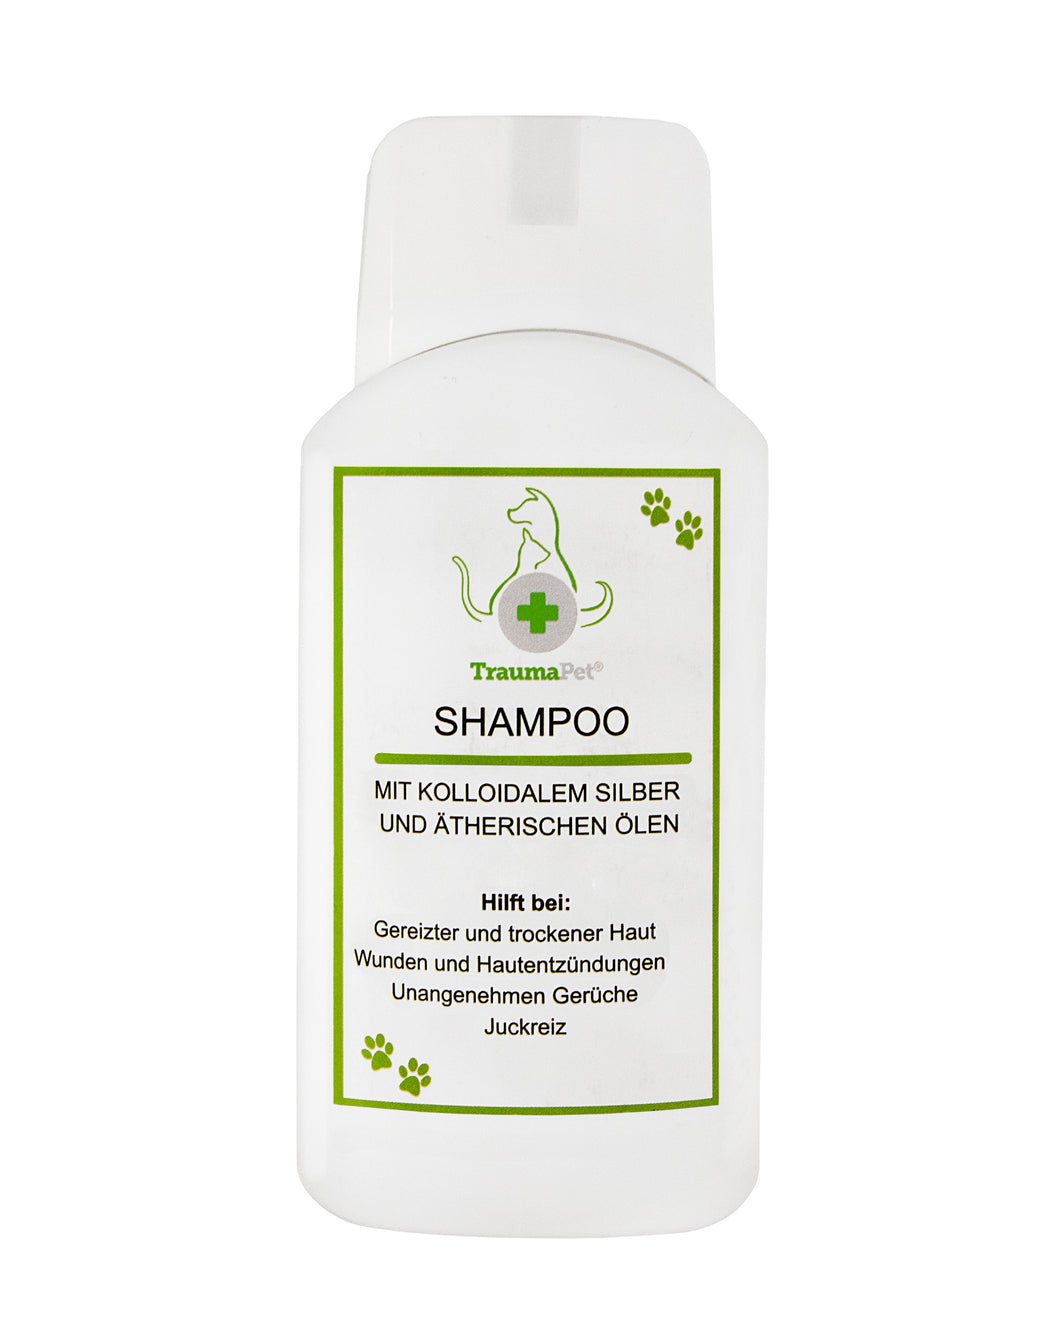 Shampoo für Hund und Katze mit kolloidalem Silber und ätherischen Ölen